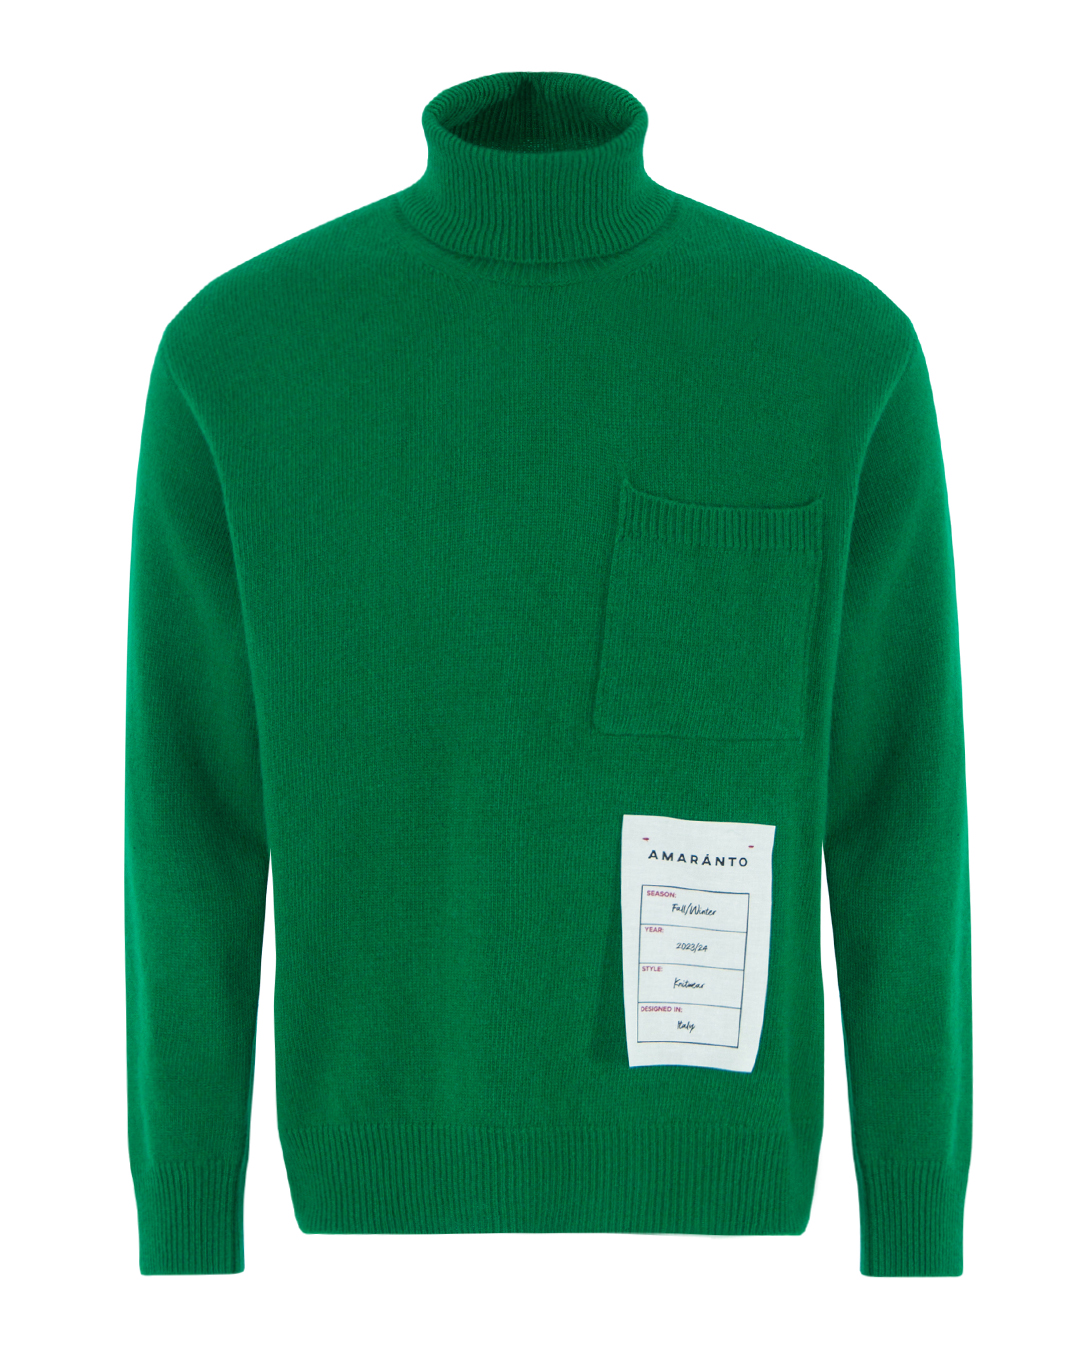 свитер AMARANTO B9R0023R зеленый xl, размер xl